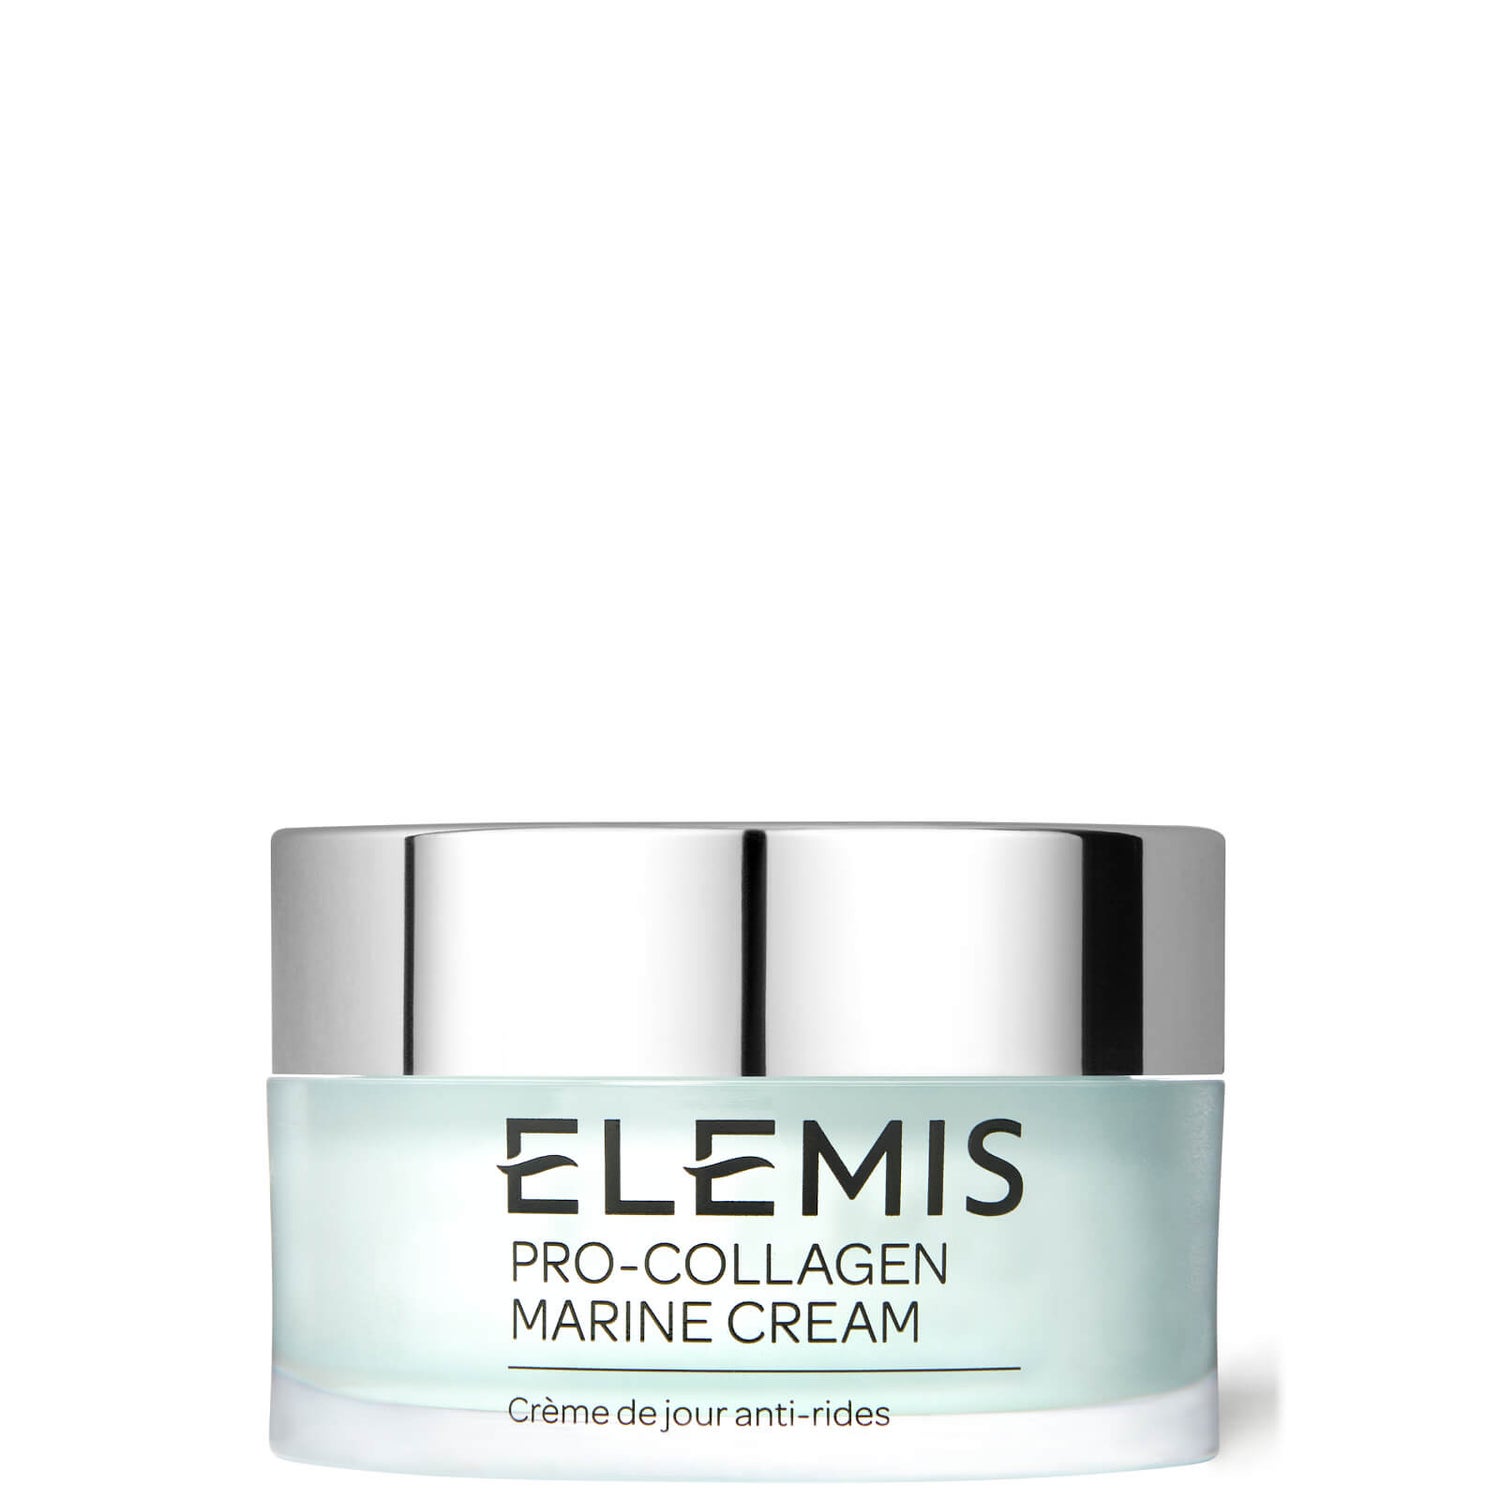 Pro-Collagen Marine Cream 30ml